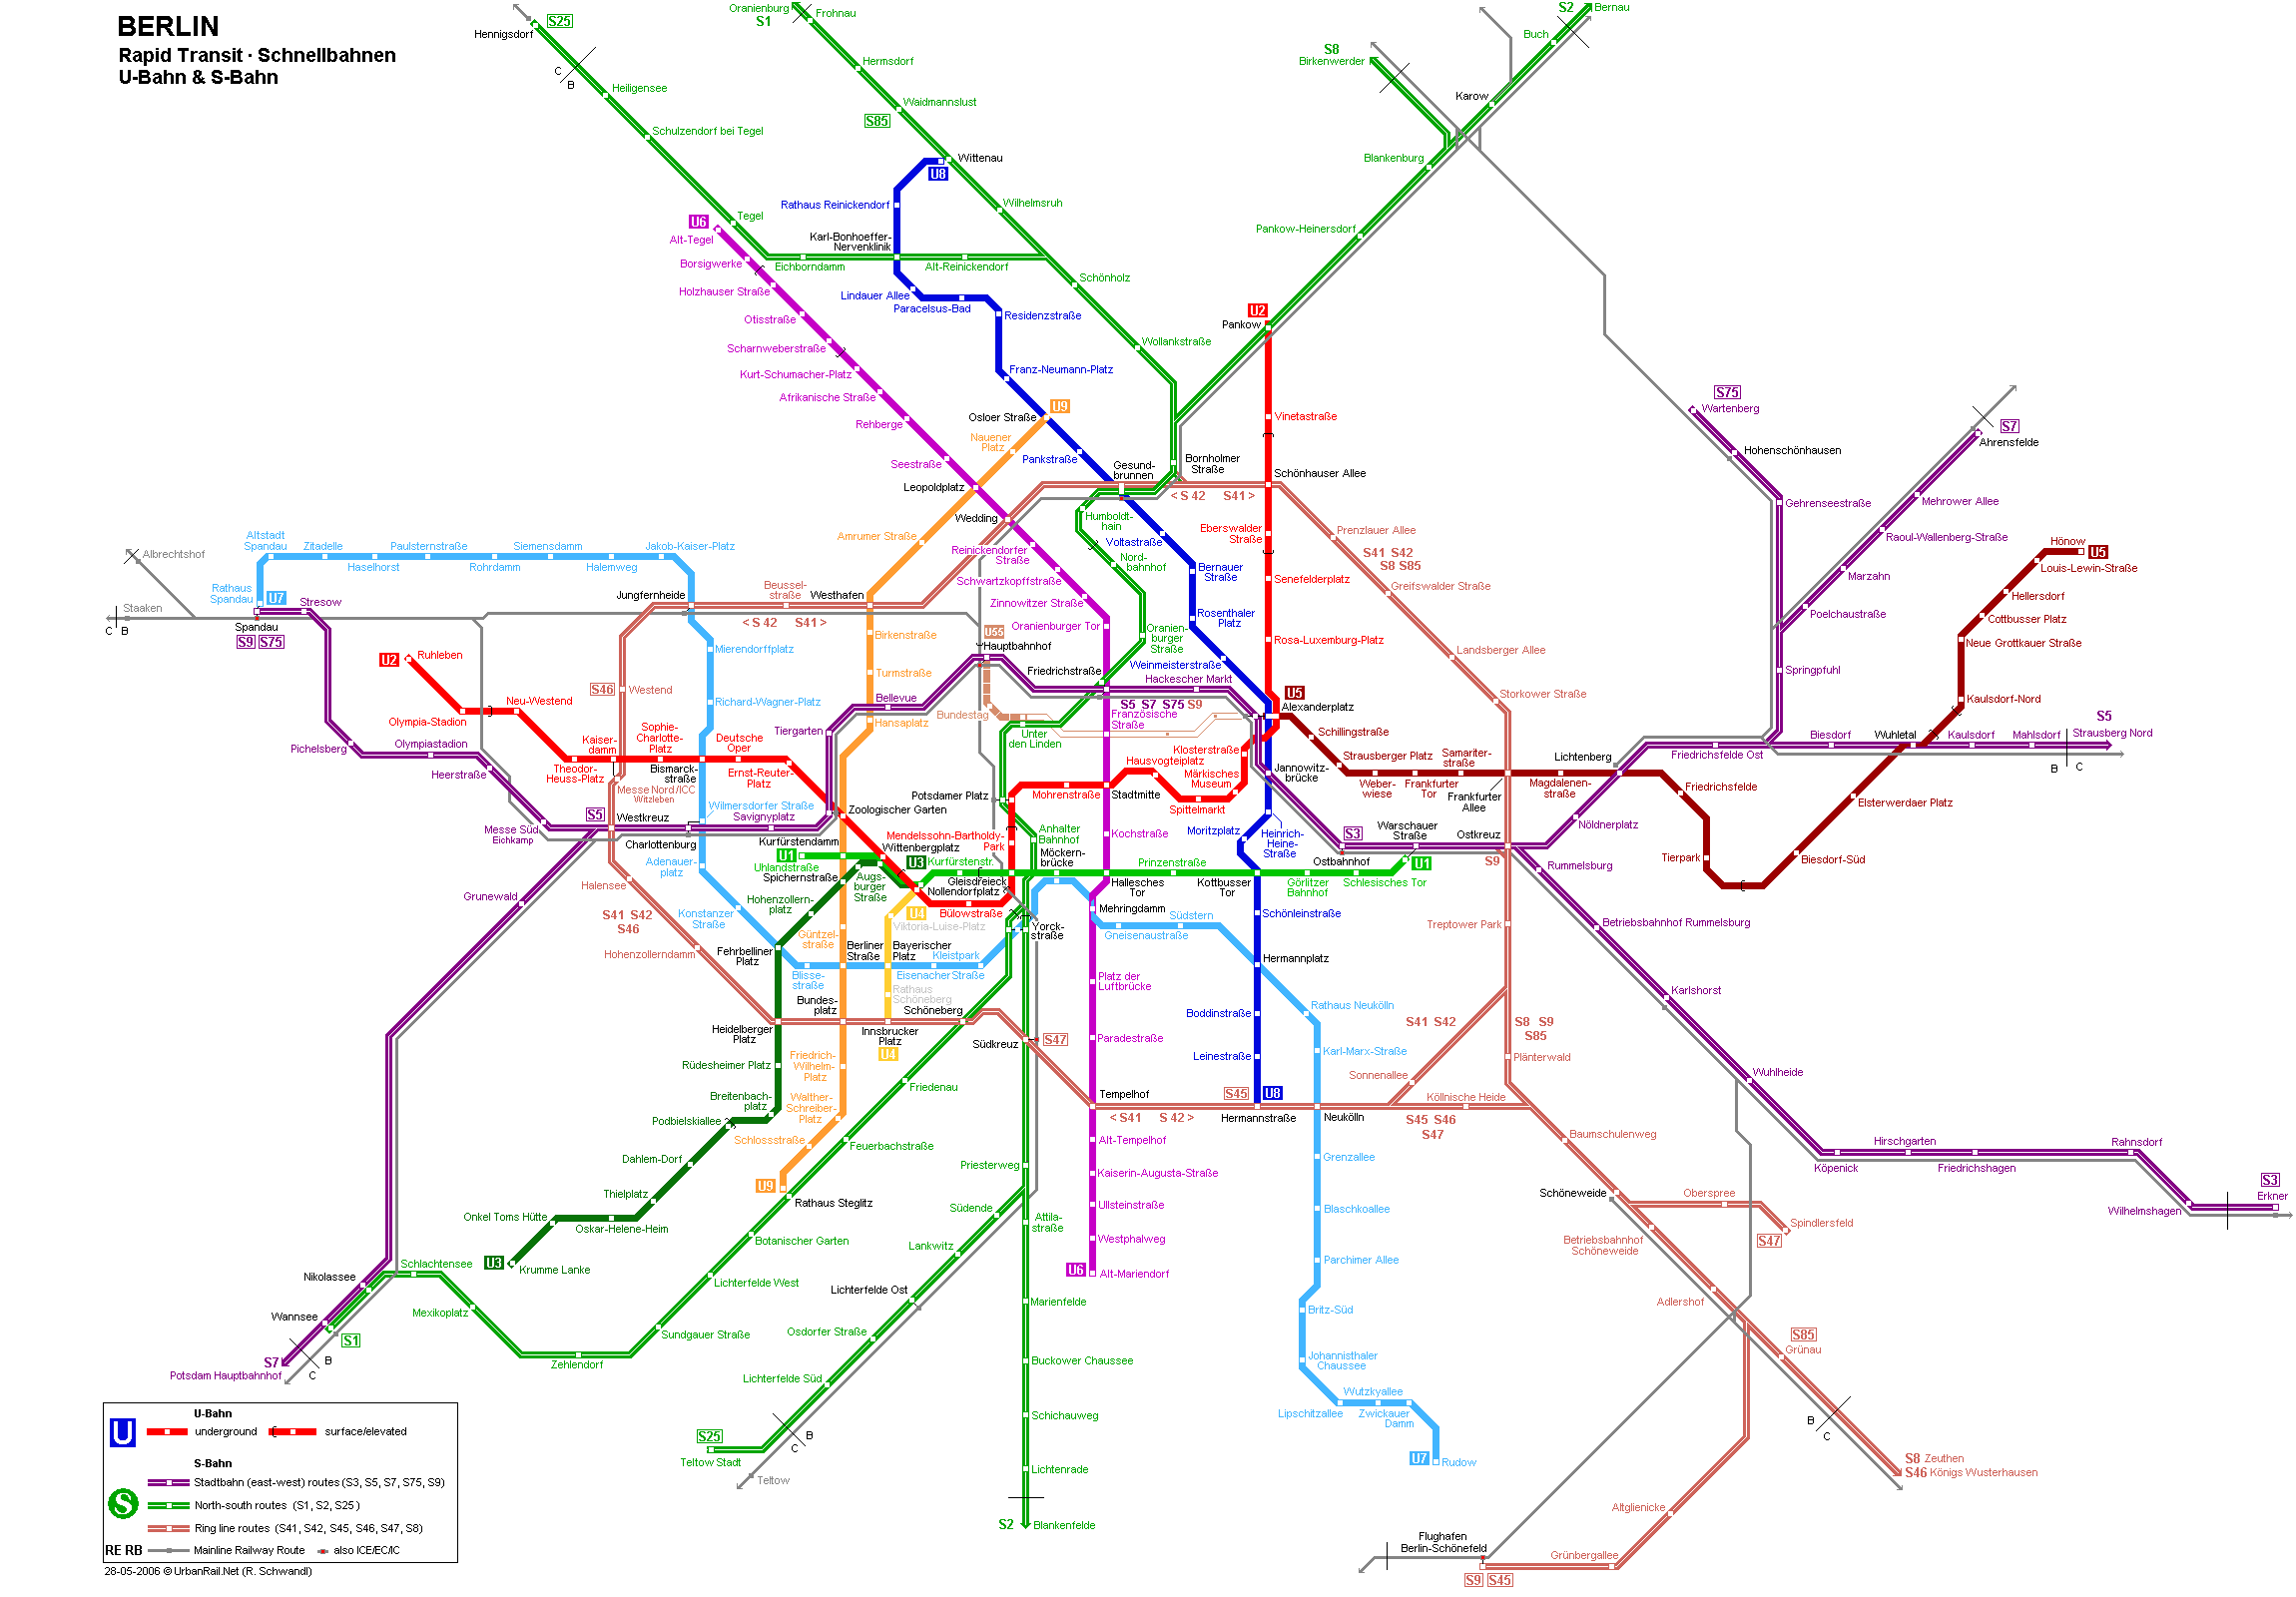 budapest térkép metróvonalak Berlin térkép, Berlin látnivalóinak és nevezetességeinek térképe  budapest térkép metróvonalak